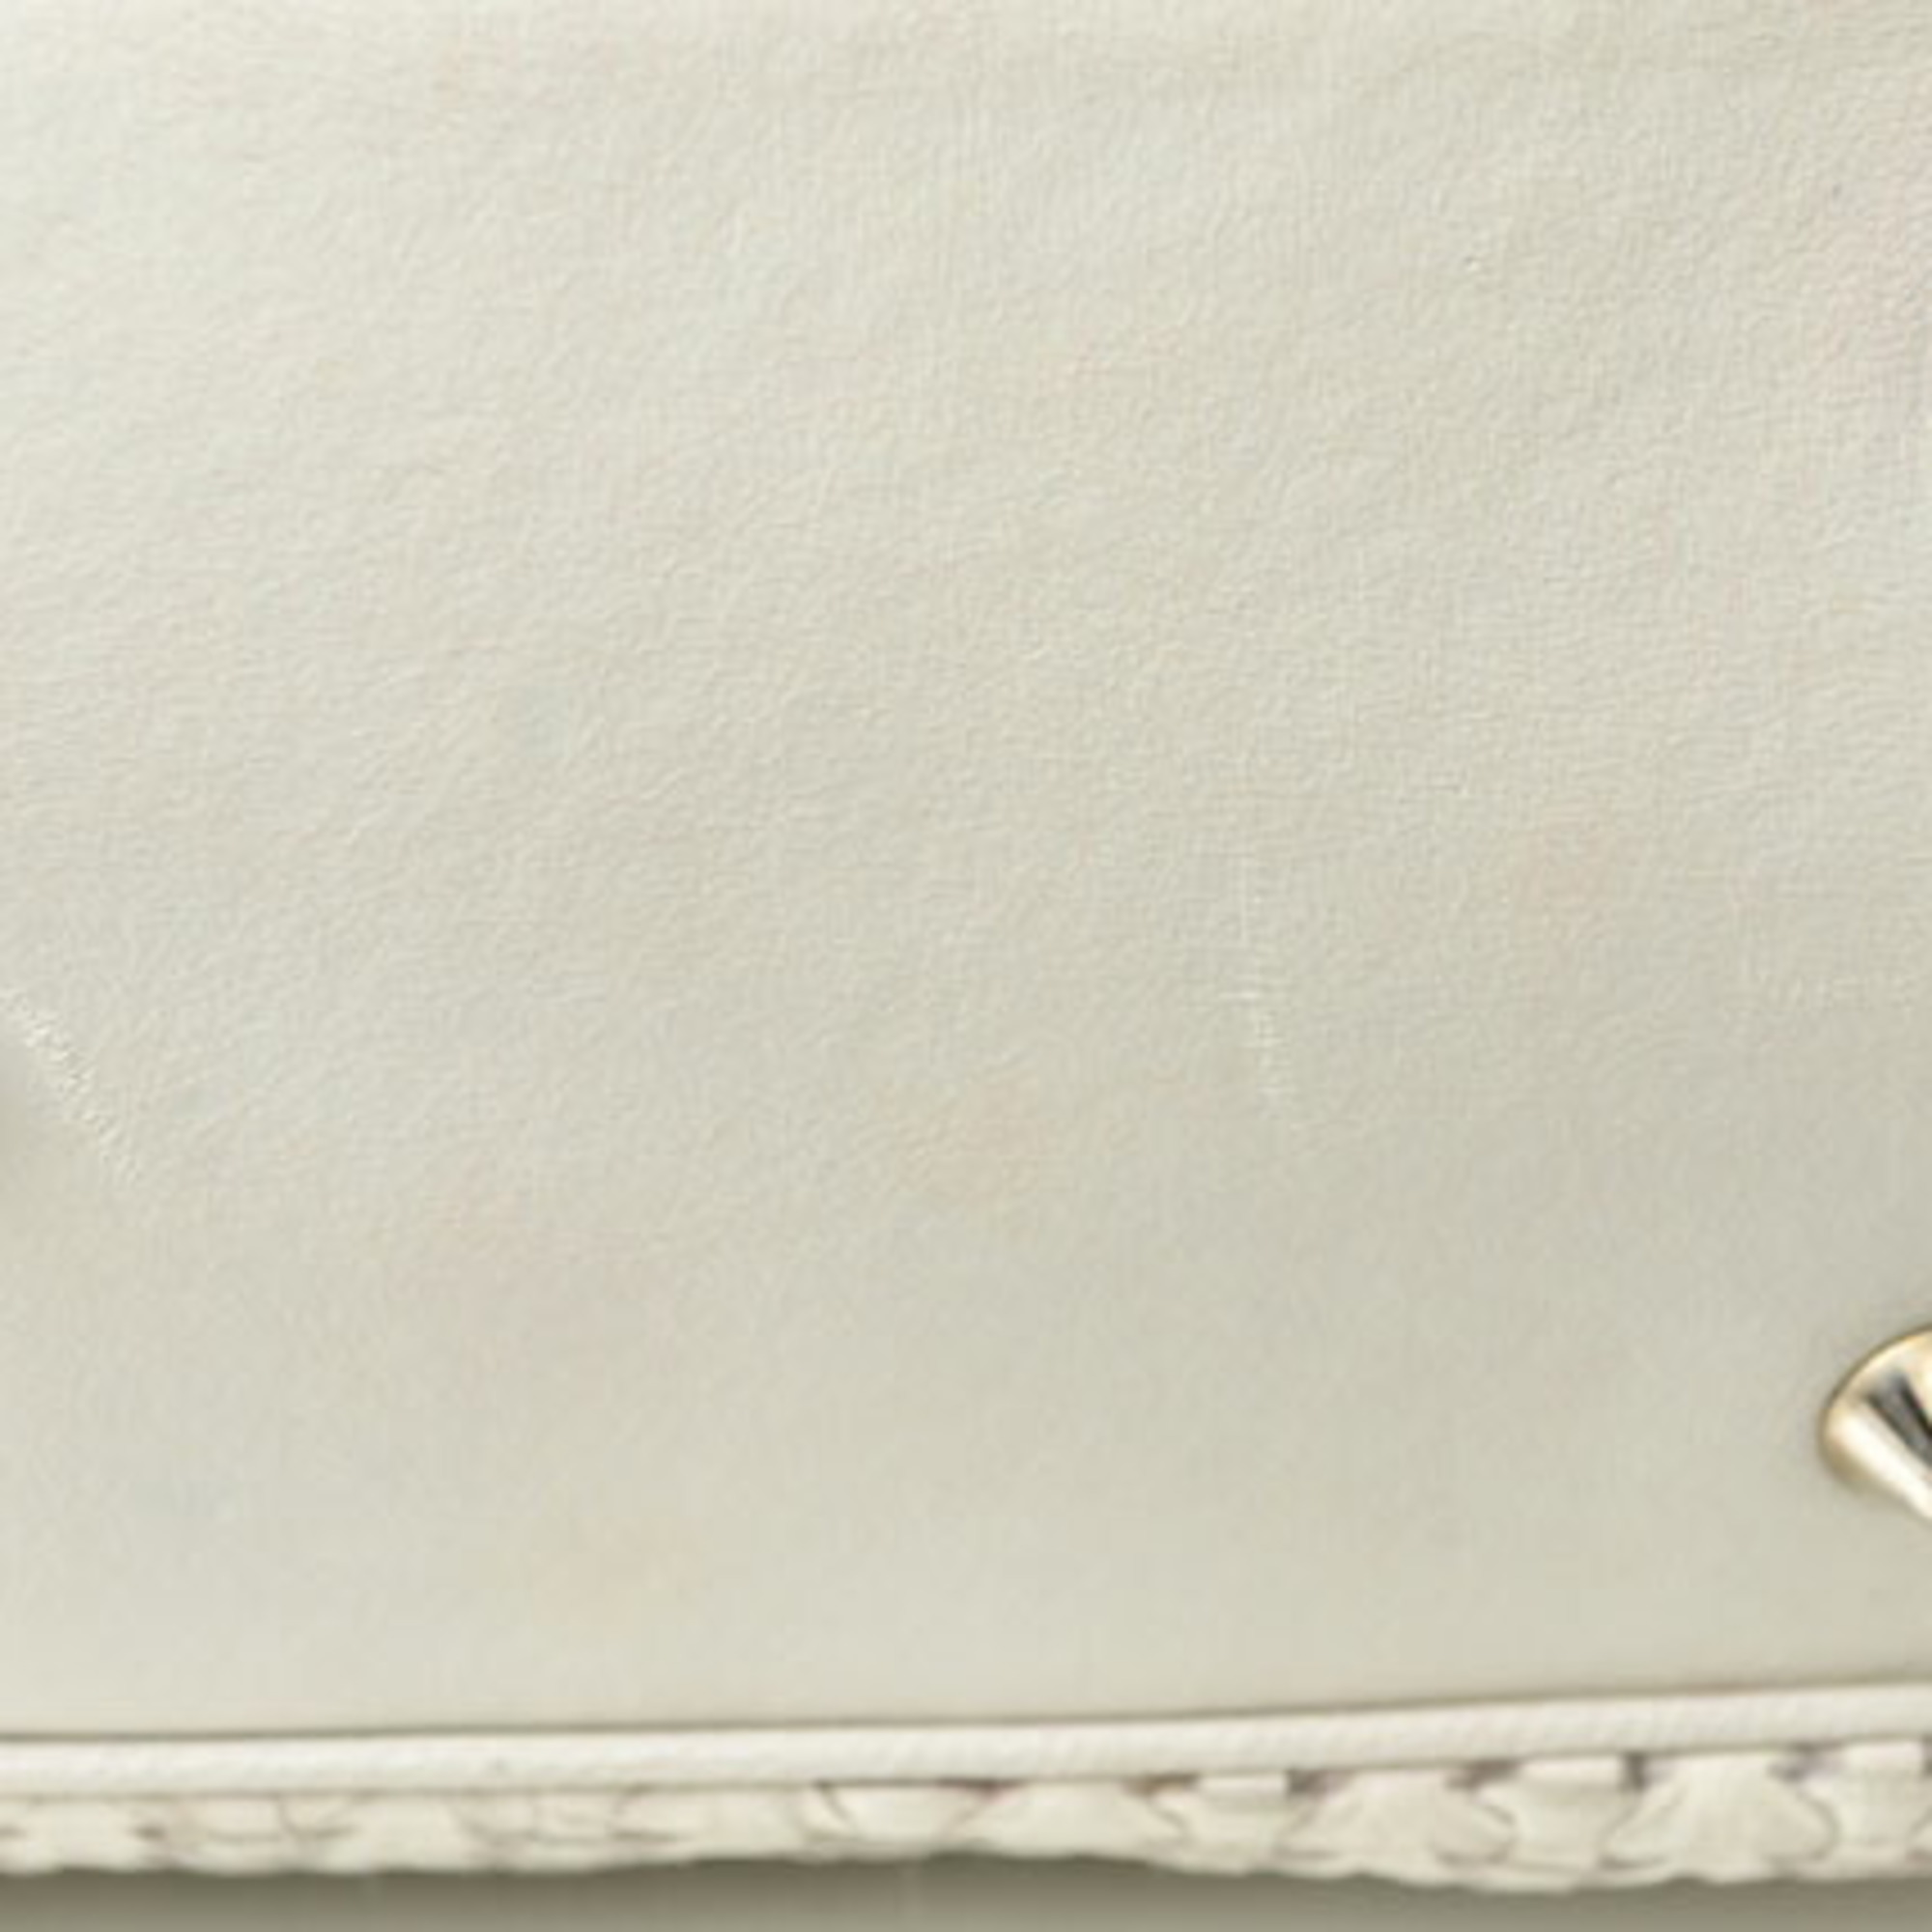 Christian Dior Tote Bag Lady Intrecciato White Silver